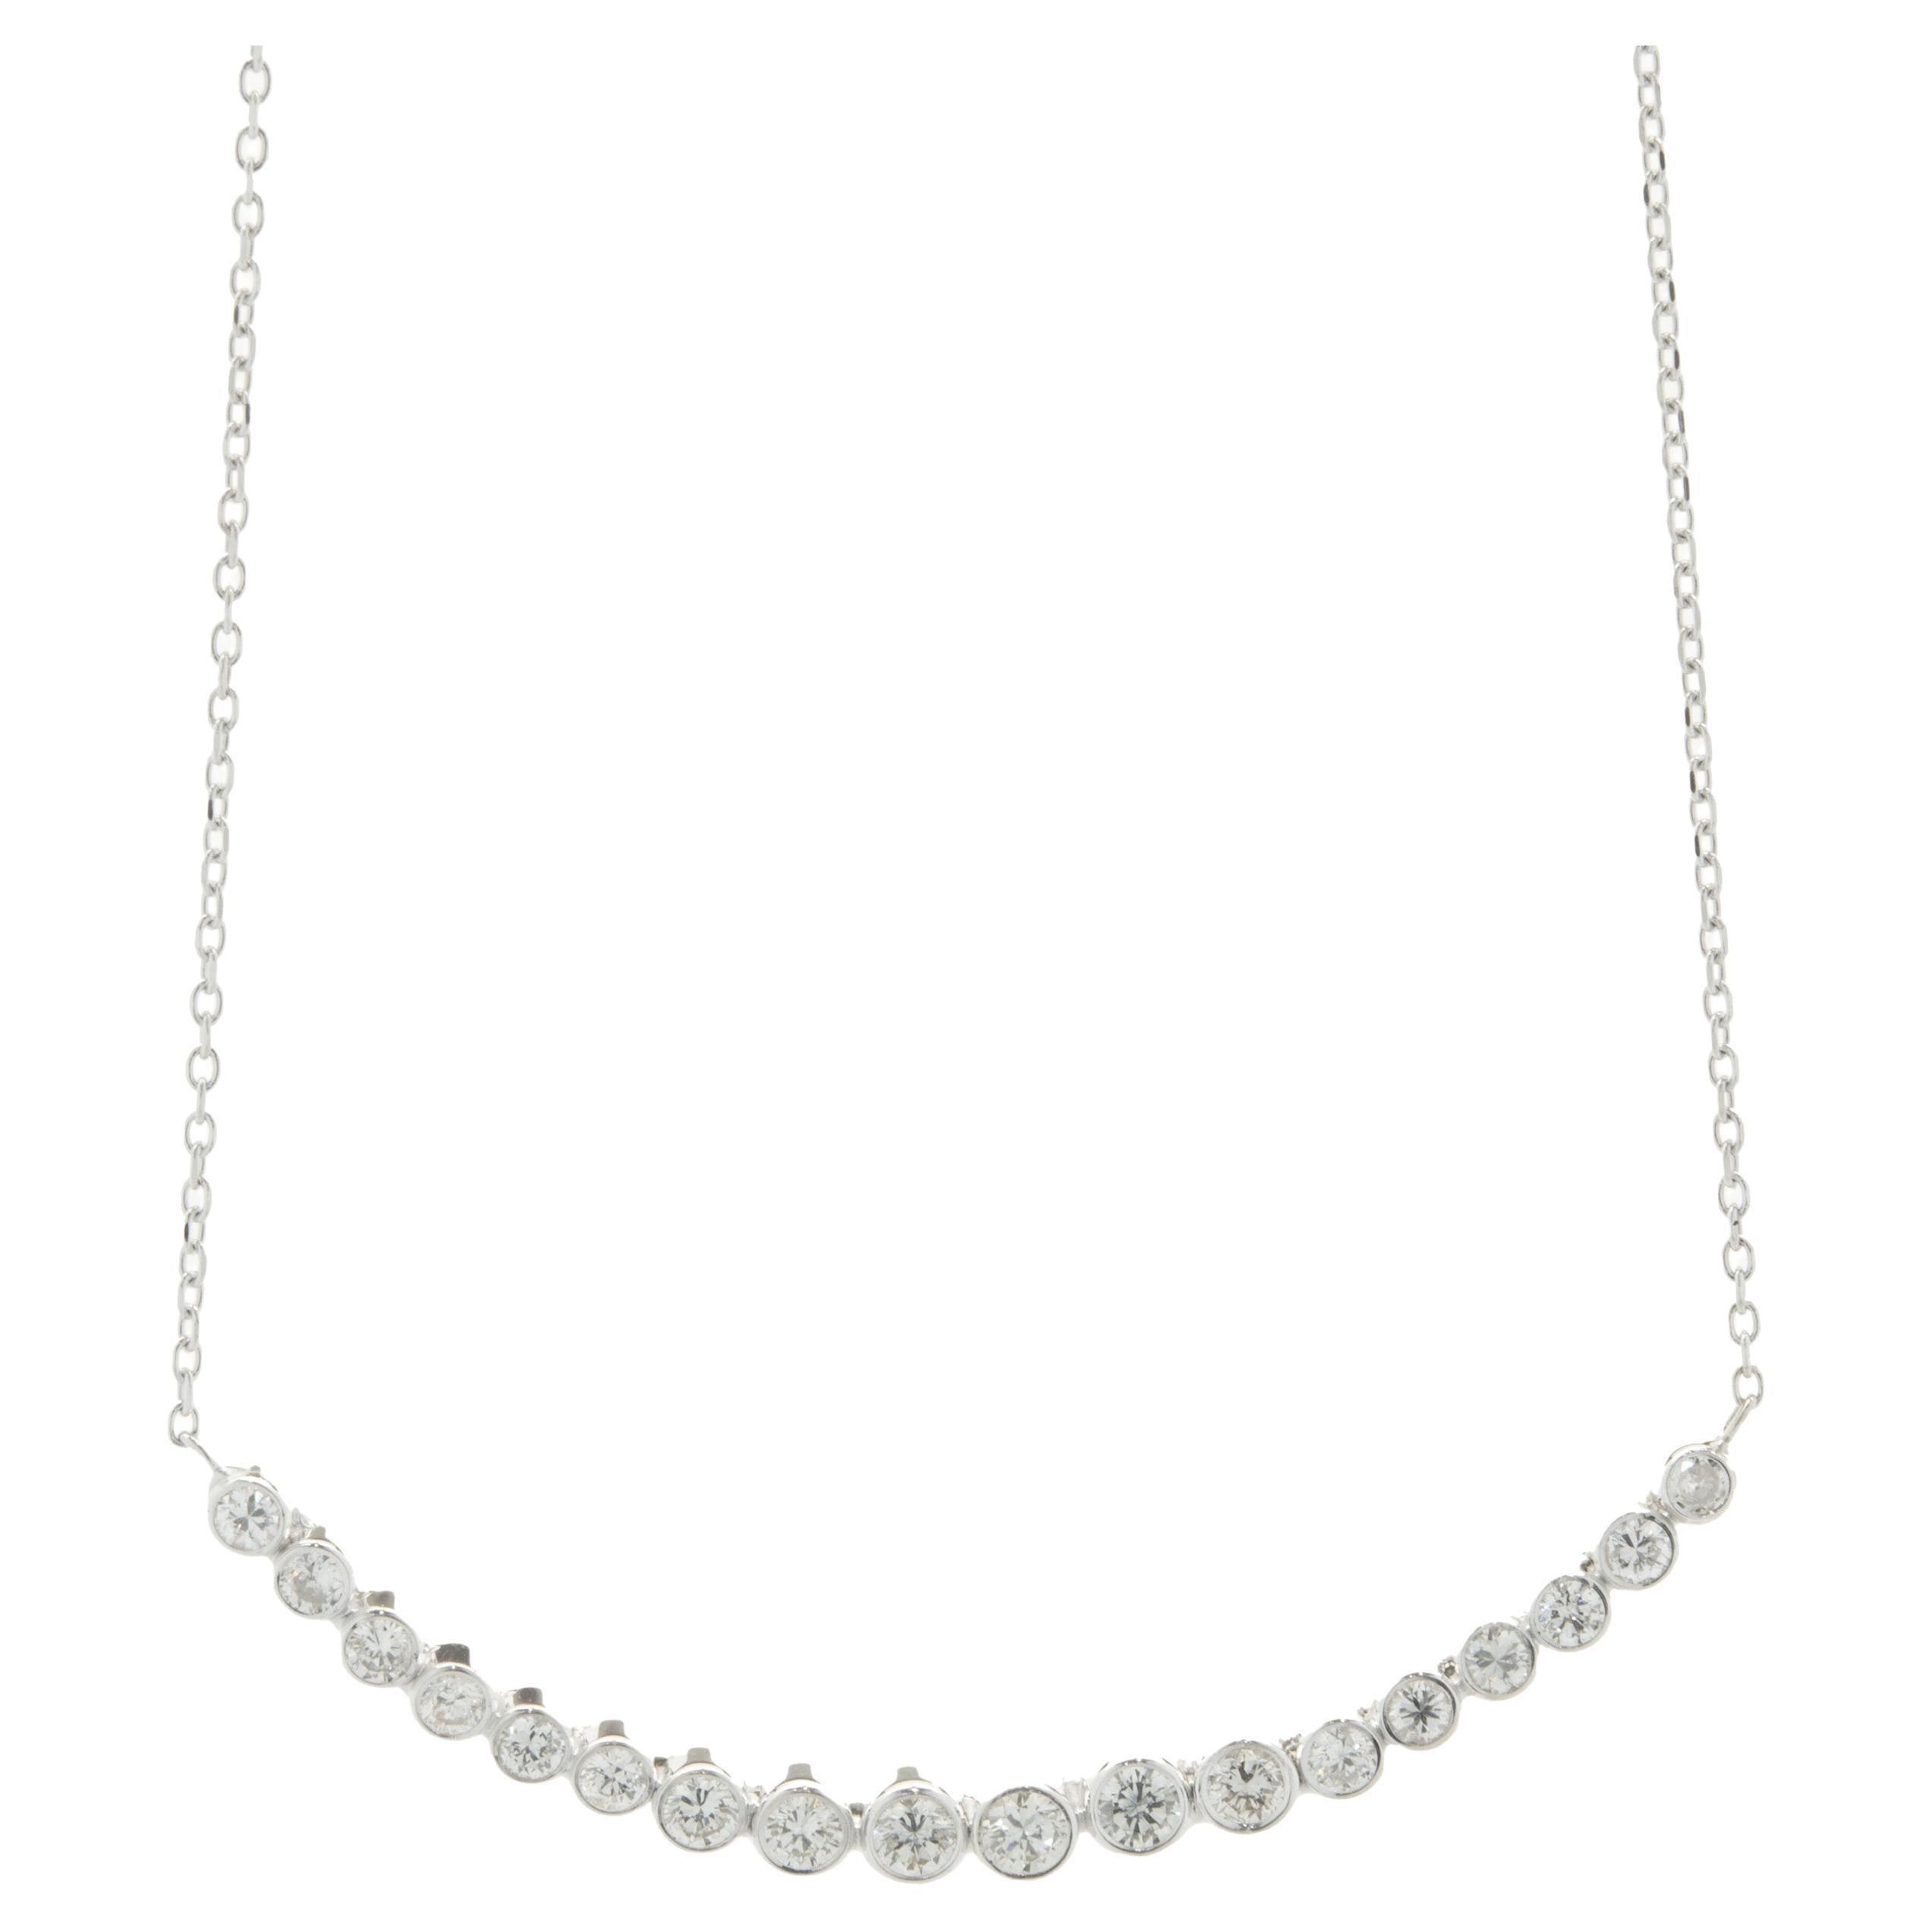 14 Karat White Gold Diamond Smile Necklace